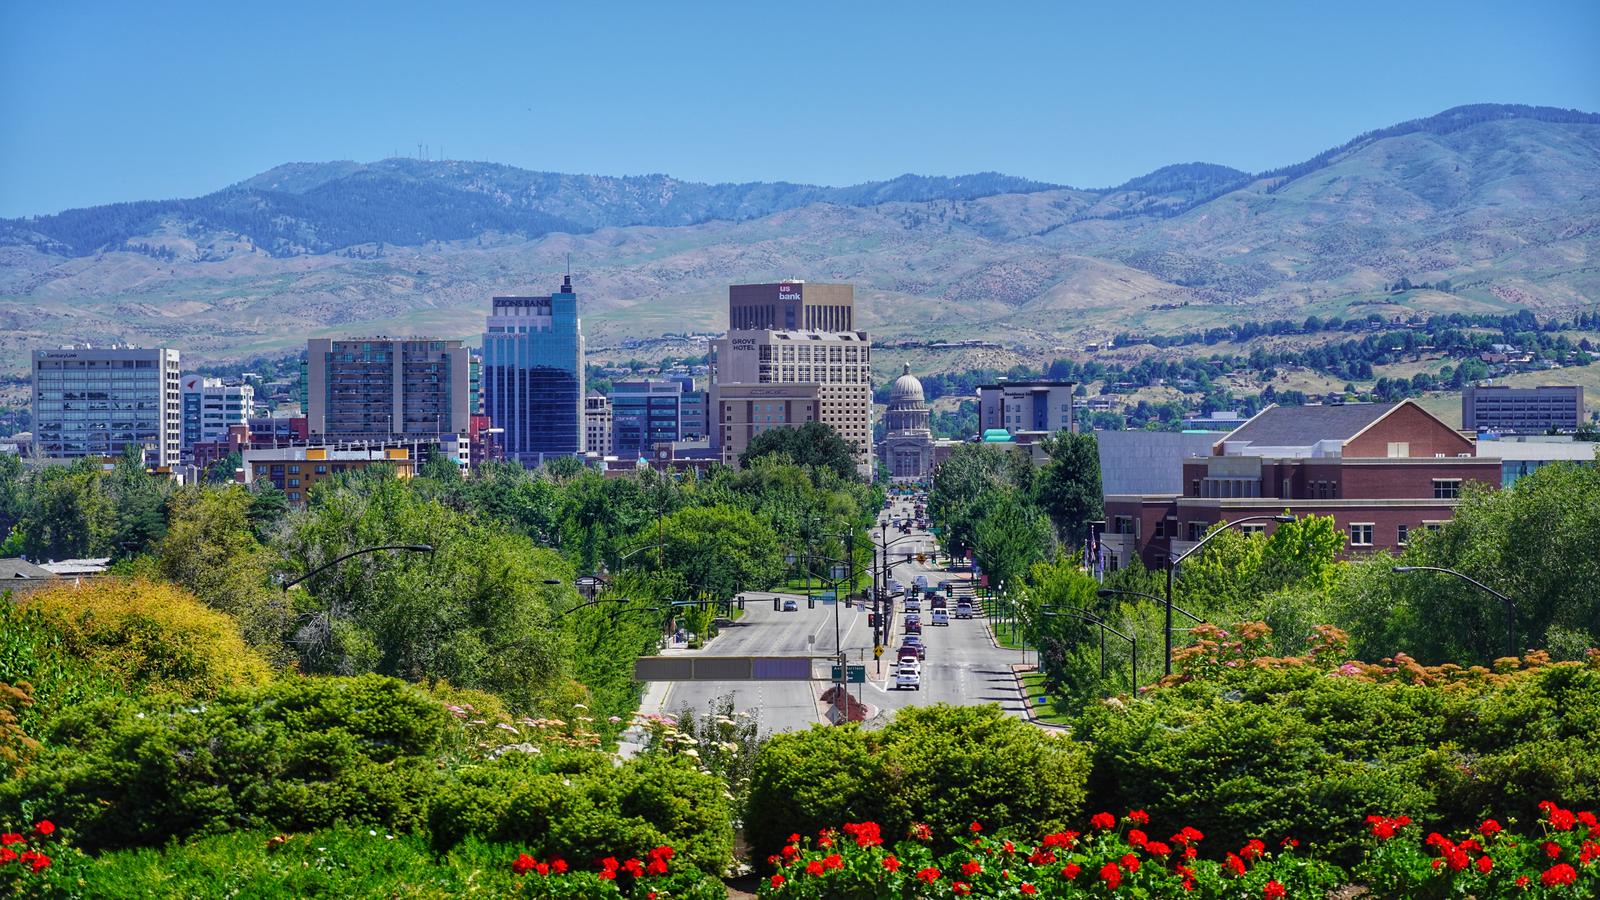 50 States Quiz Boise, Idaho